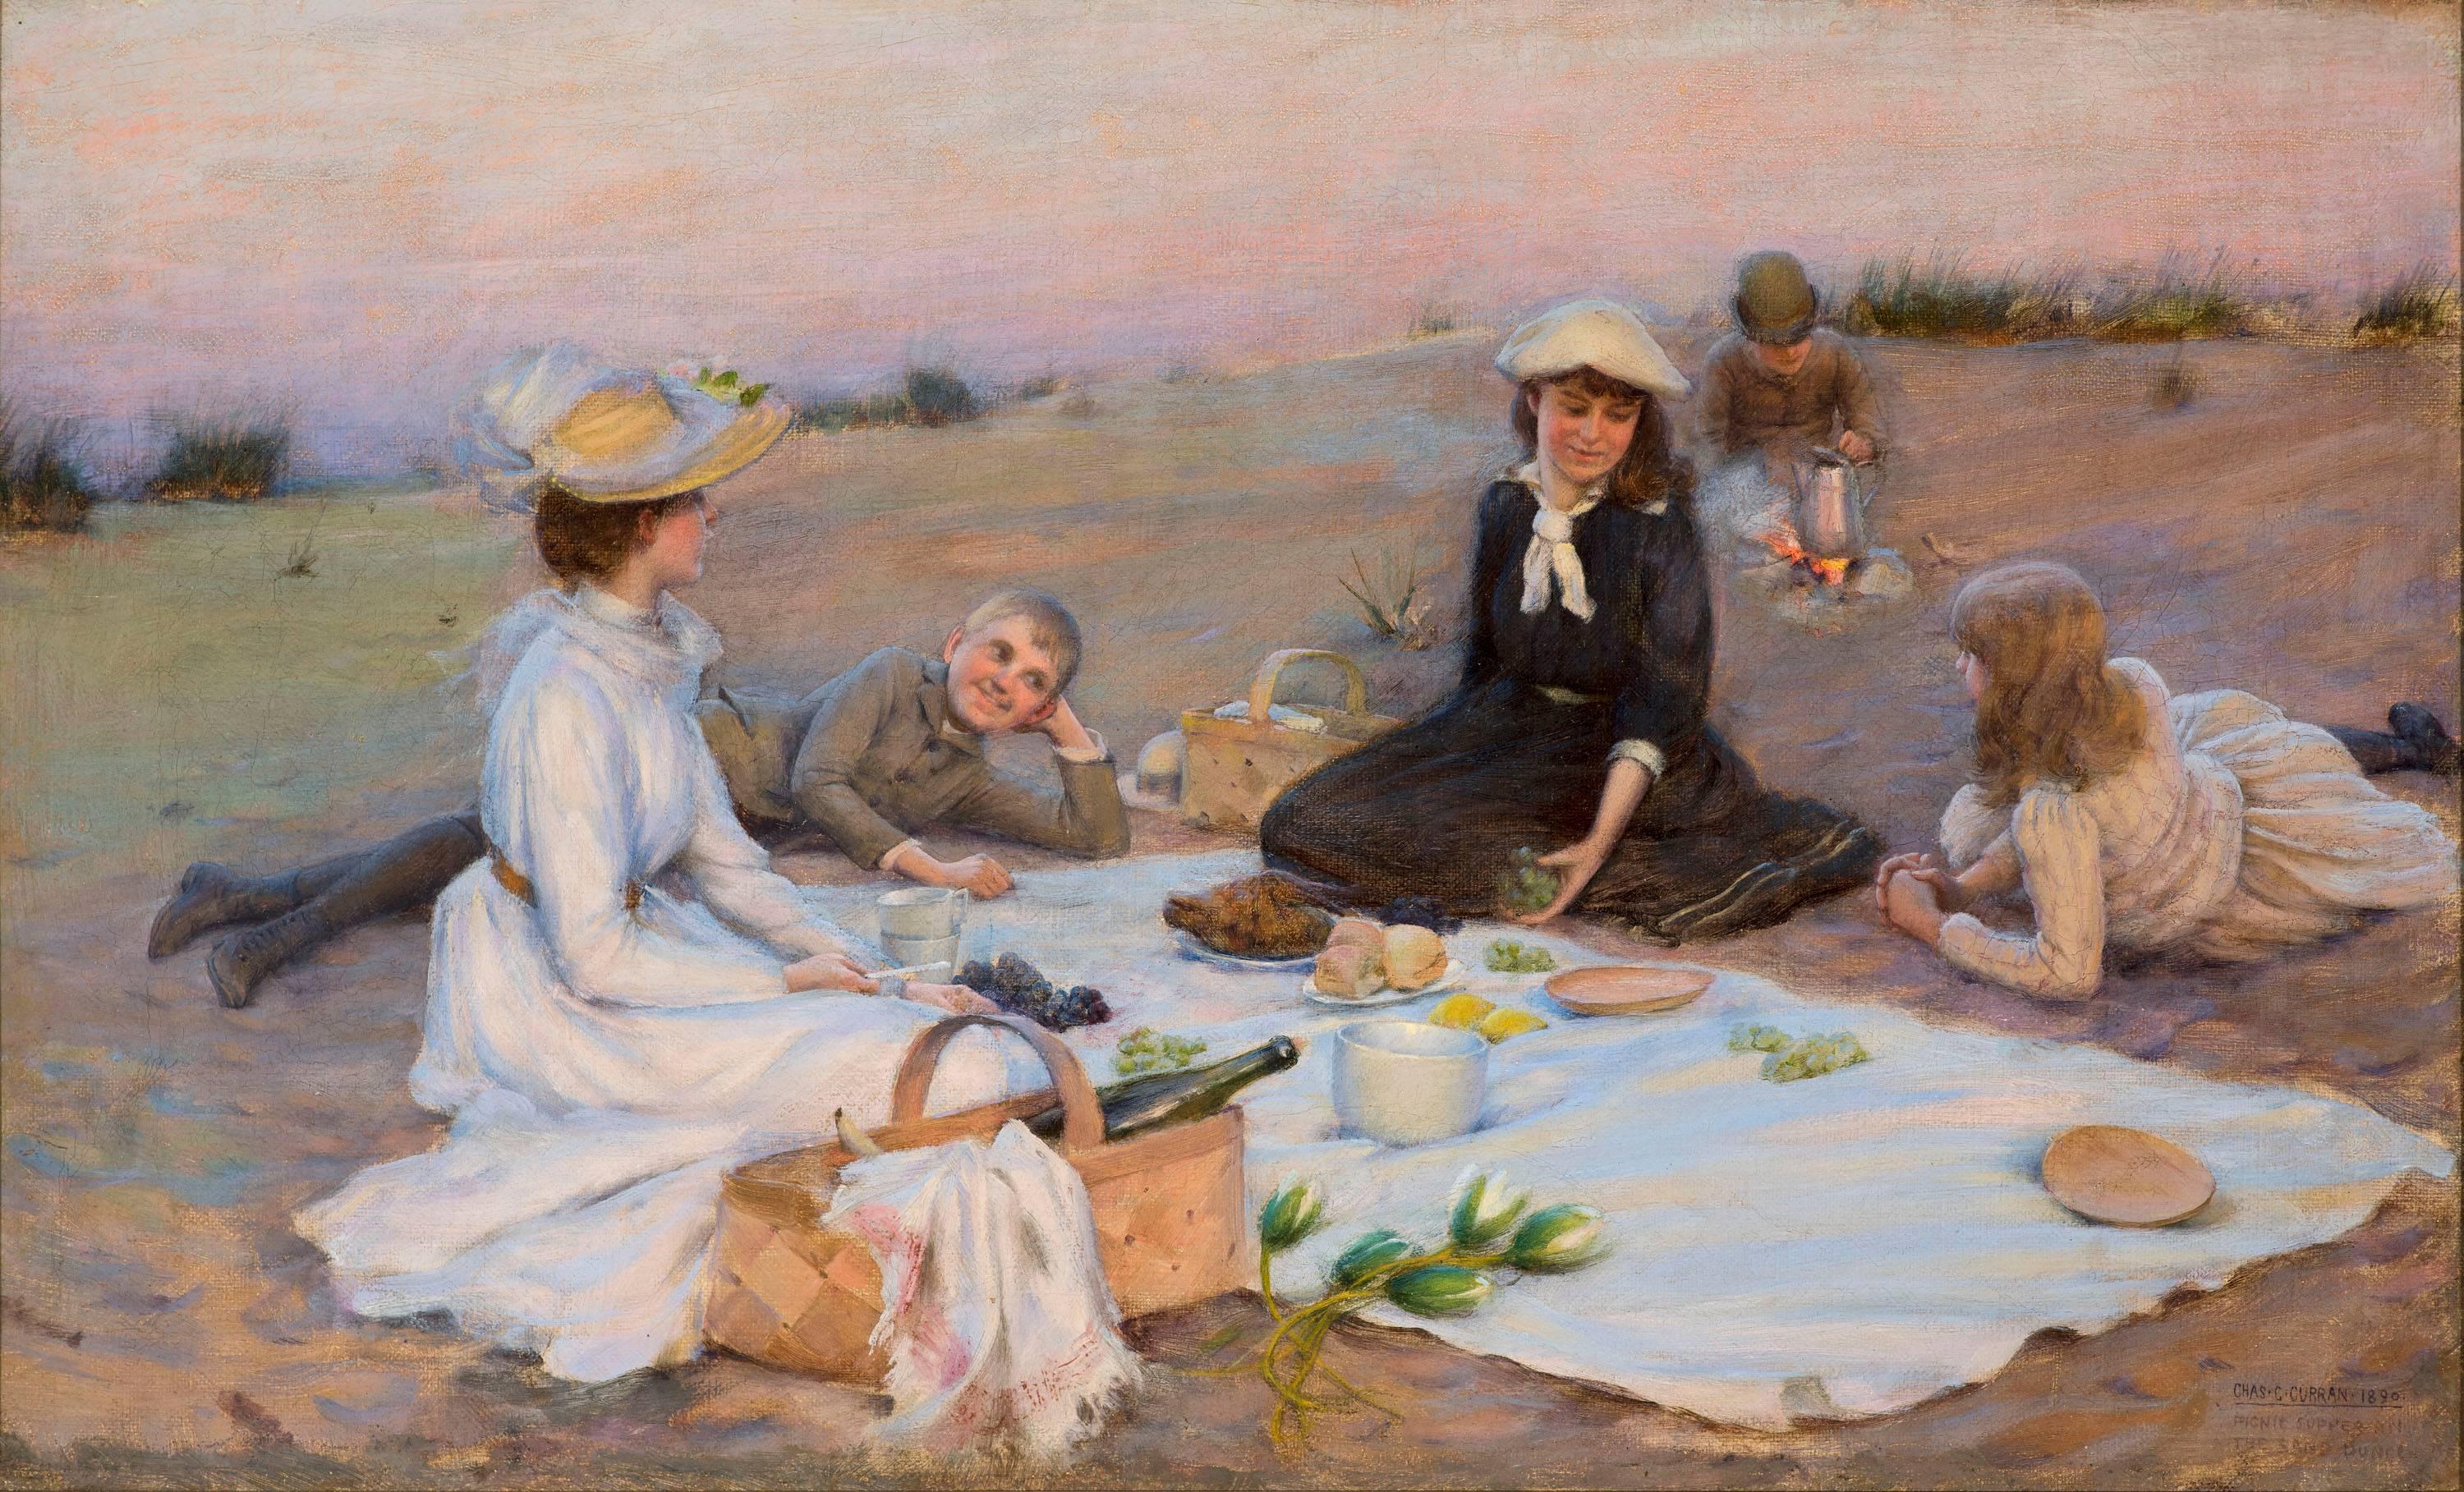 Picnic Supper auf den Sandbäumen – Painting von Charles Courtney Curran